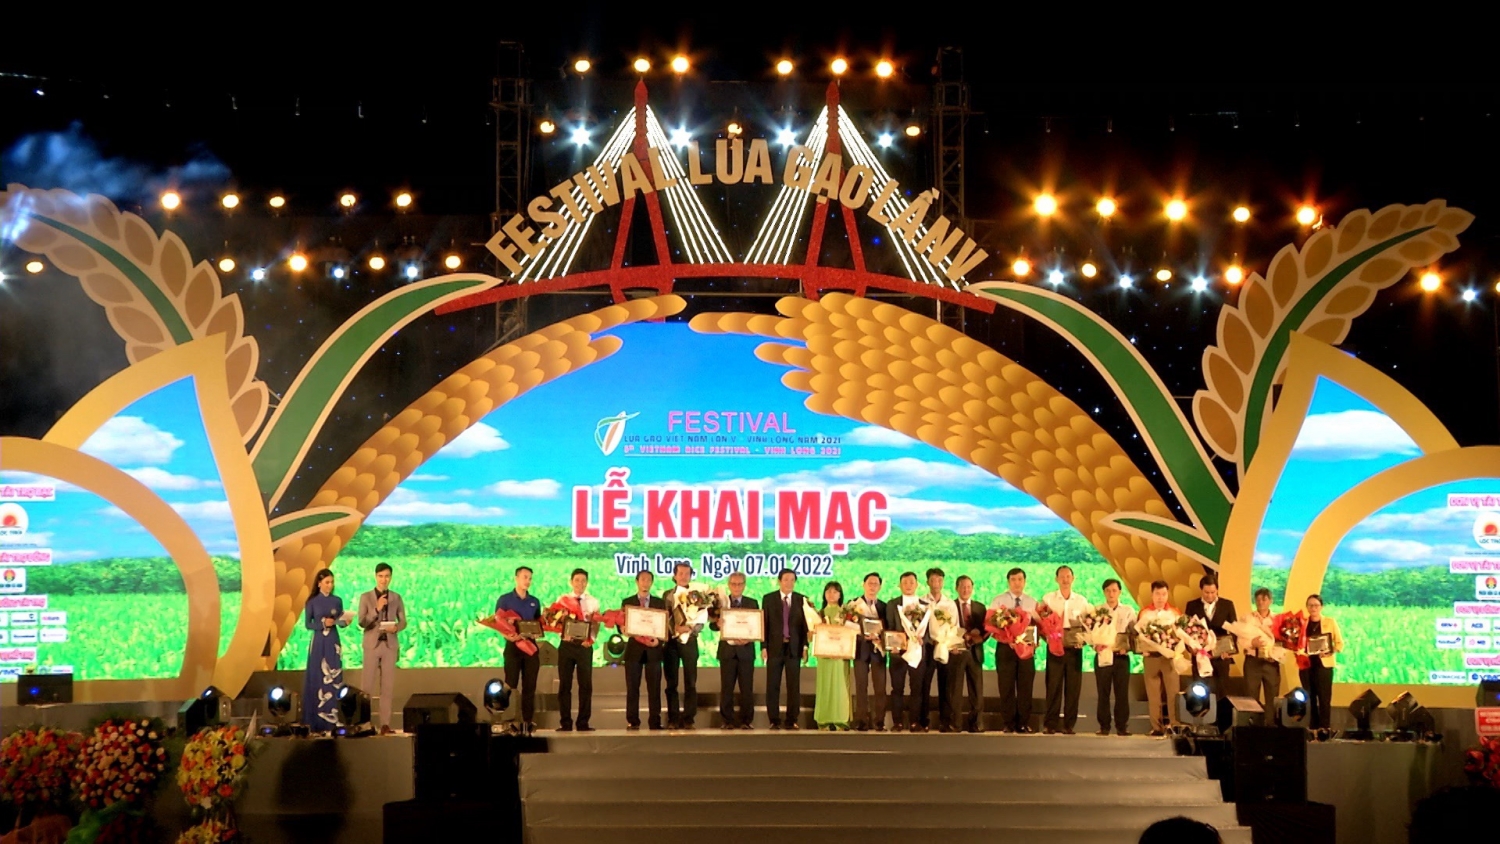 Phân Bón Cà Mau đồng hành cùng Festival Lúa gạo Việt Nam lần thứ V